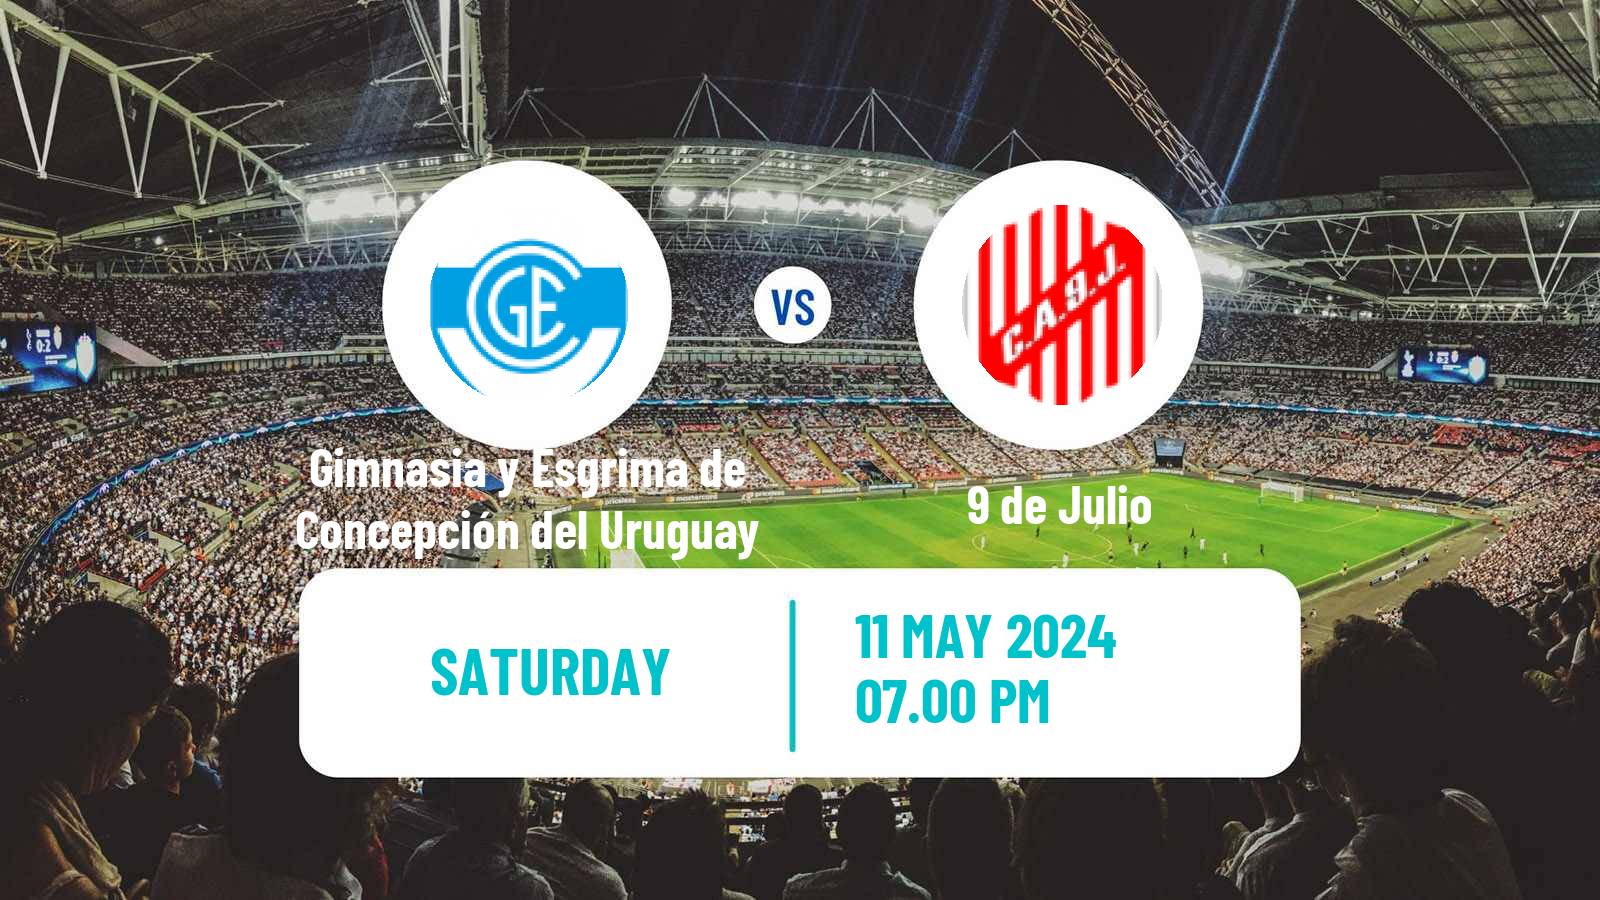 Soccer Argentinian Torneo Federal Gimnasia y Esgrima de Concepción del Uruguay - 9 de Julio